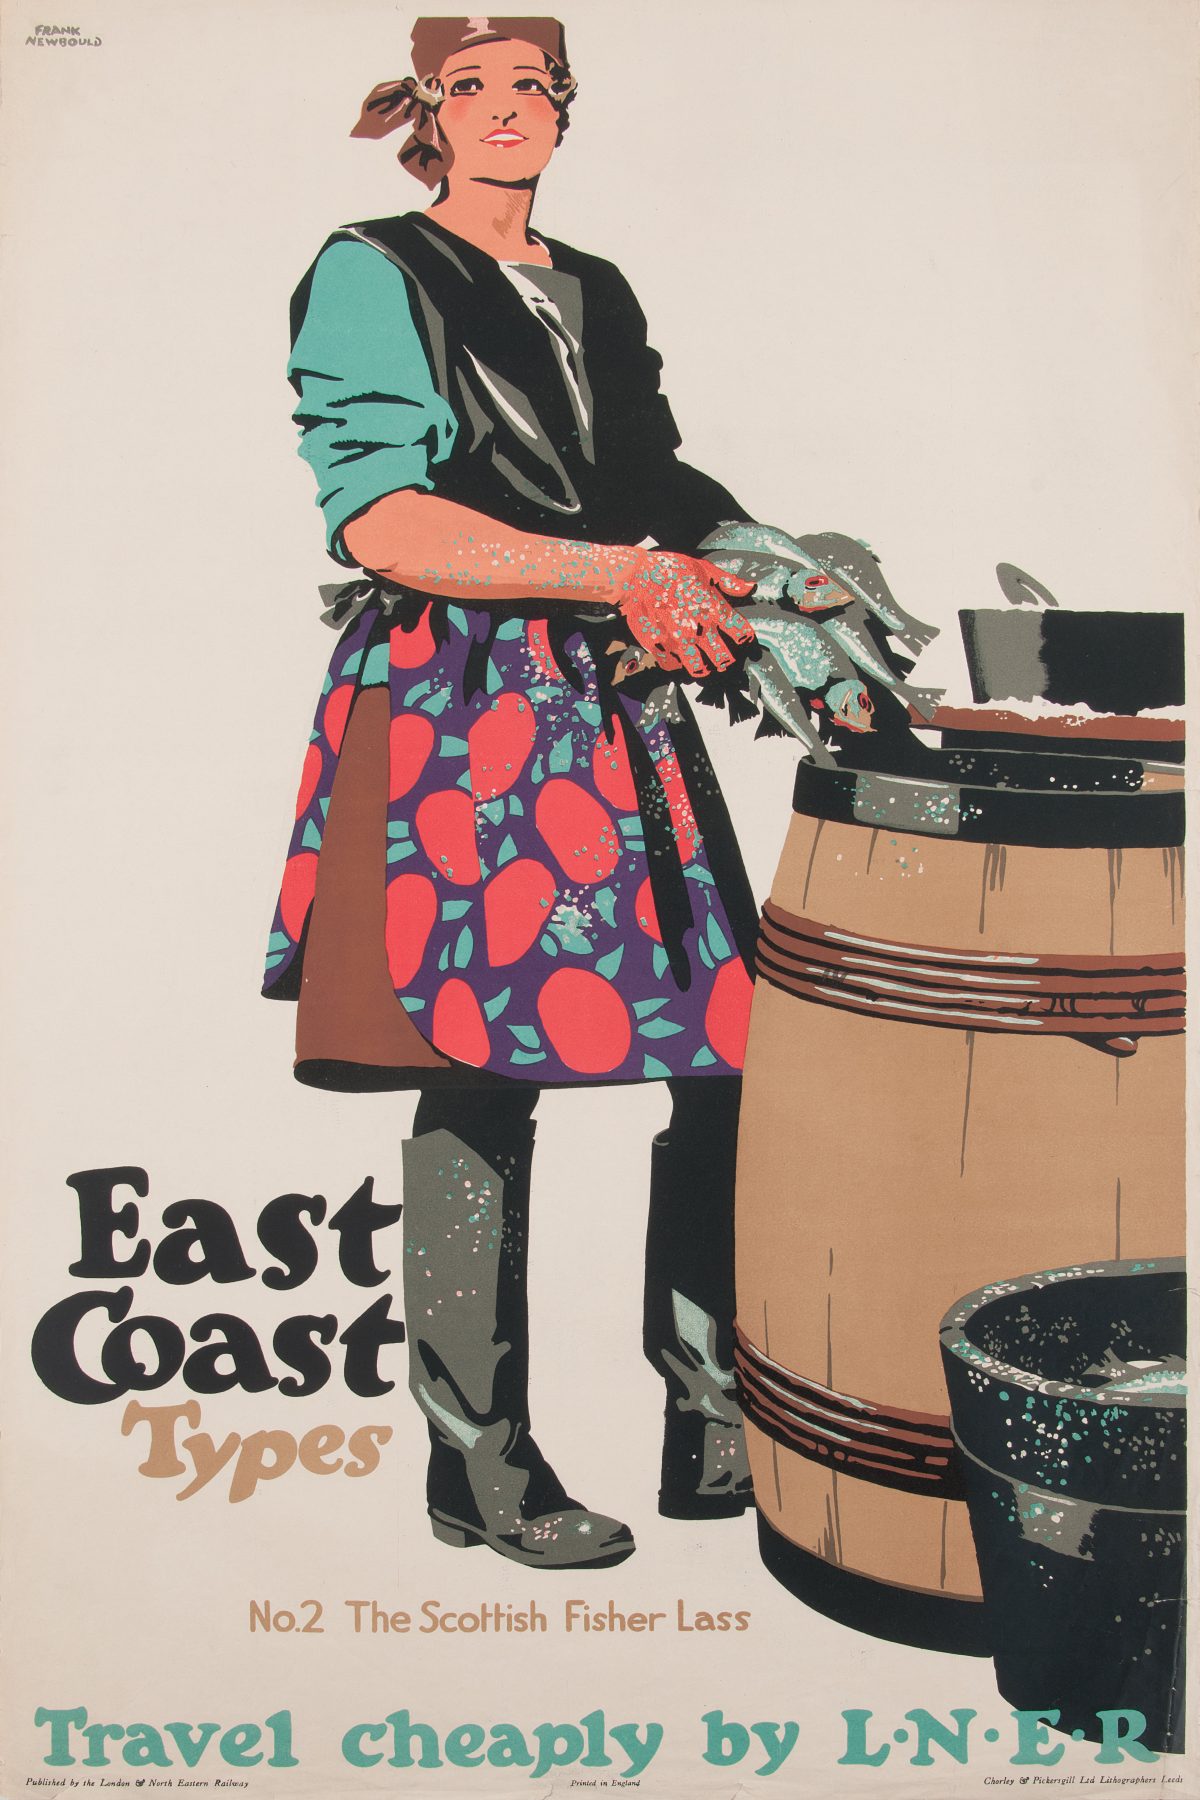 Glamorosos posters de viagem britânicos de Entre as Guerras Artes & contextos FB Frank Newbould British 1887 1951 East Coast Types Travel Cheaply by L.N.E.R. ca. 1930s